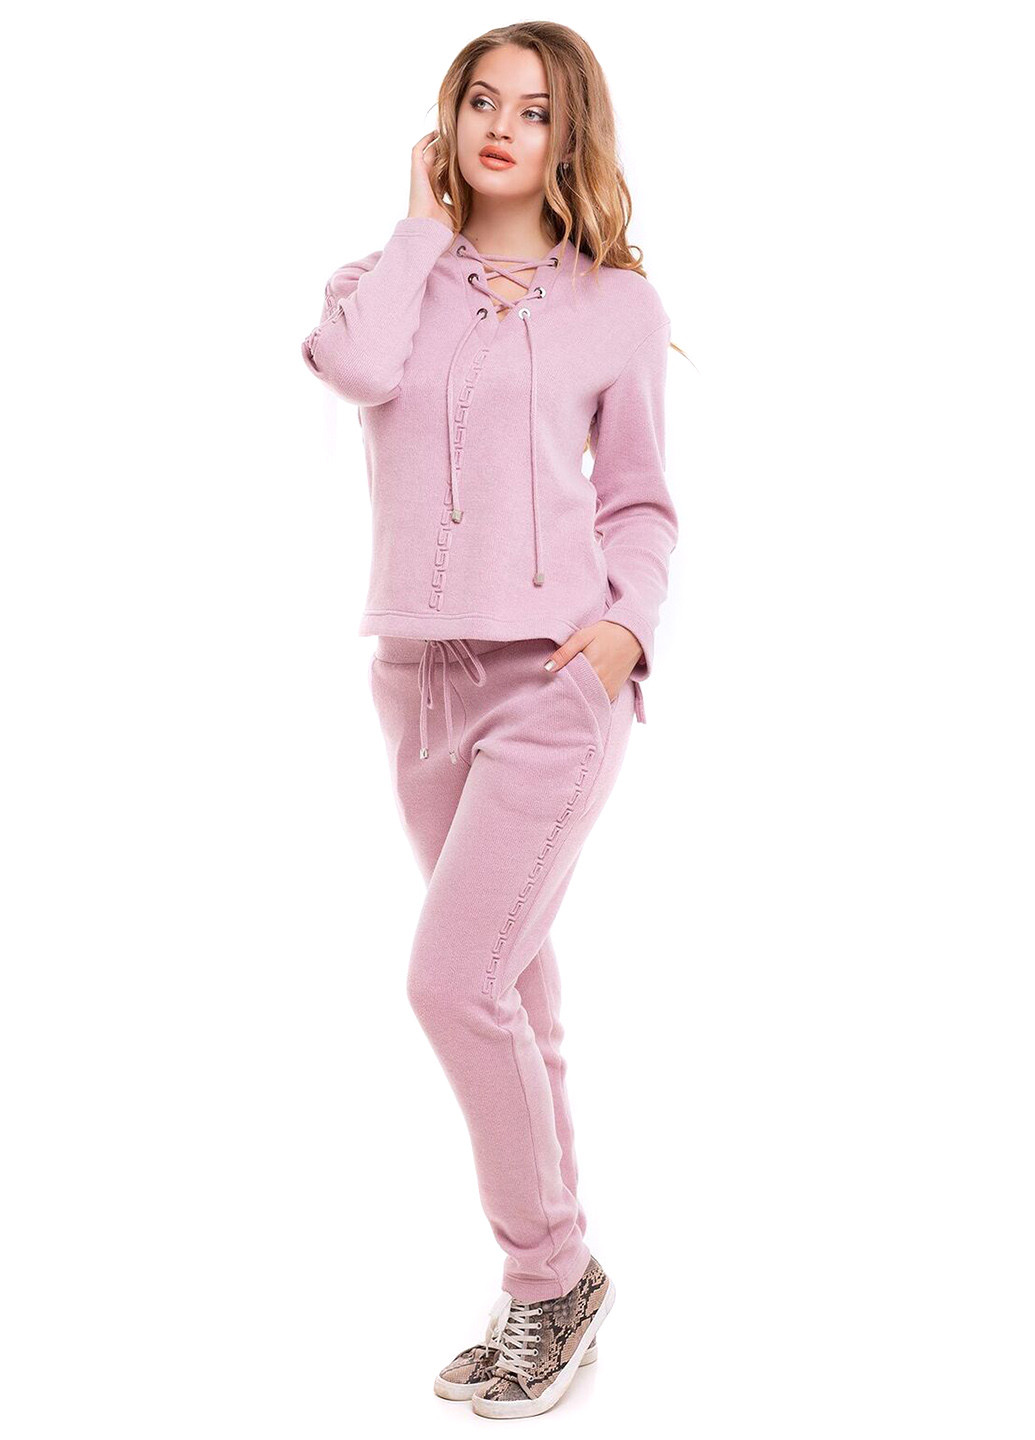 Костюм (джемпер, брюки) Luzana брючный однотонный светло-розовый спортивный